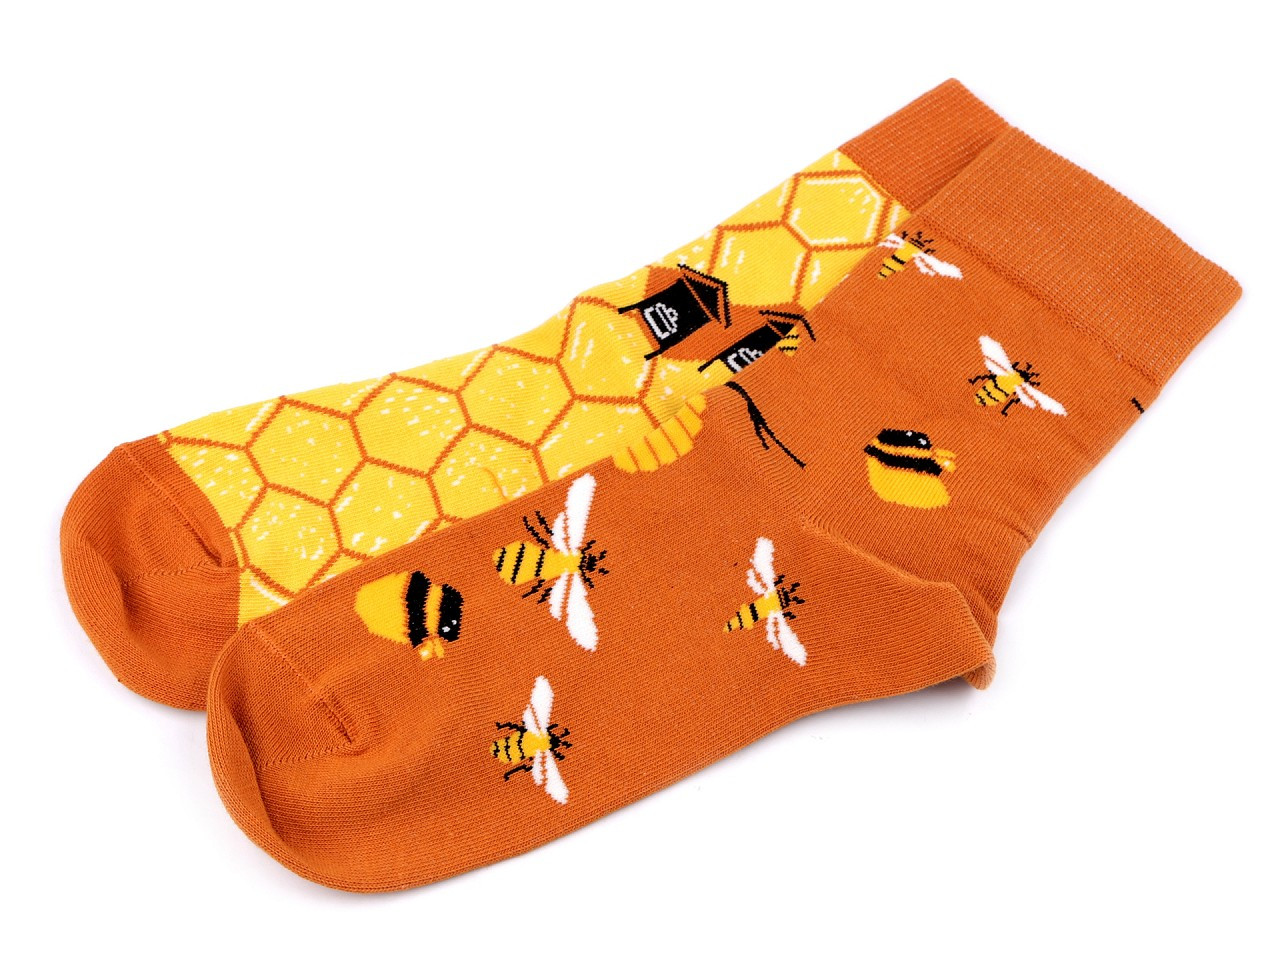 Veselé ponožky Wola, bavlněné, barva 65 (vel. 39-42) žlutá včela